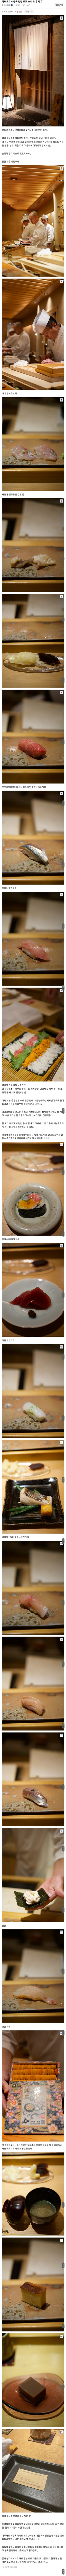 東京でおまかせ食べて食中毒になったディッシュインjpg